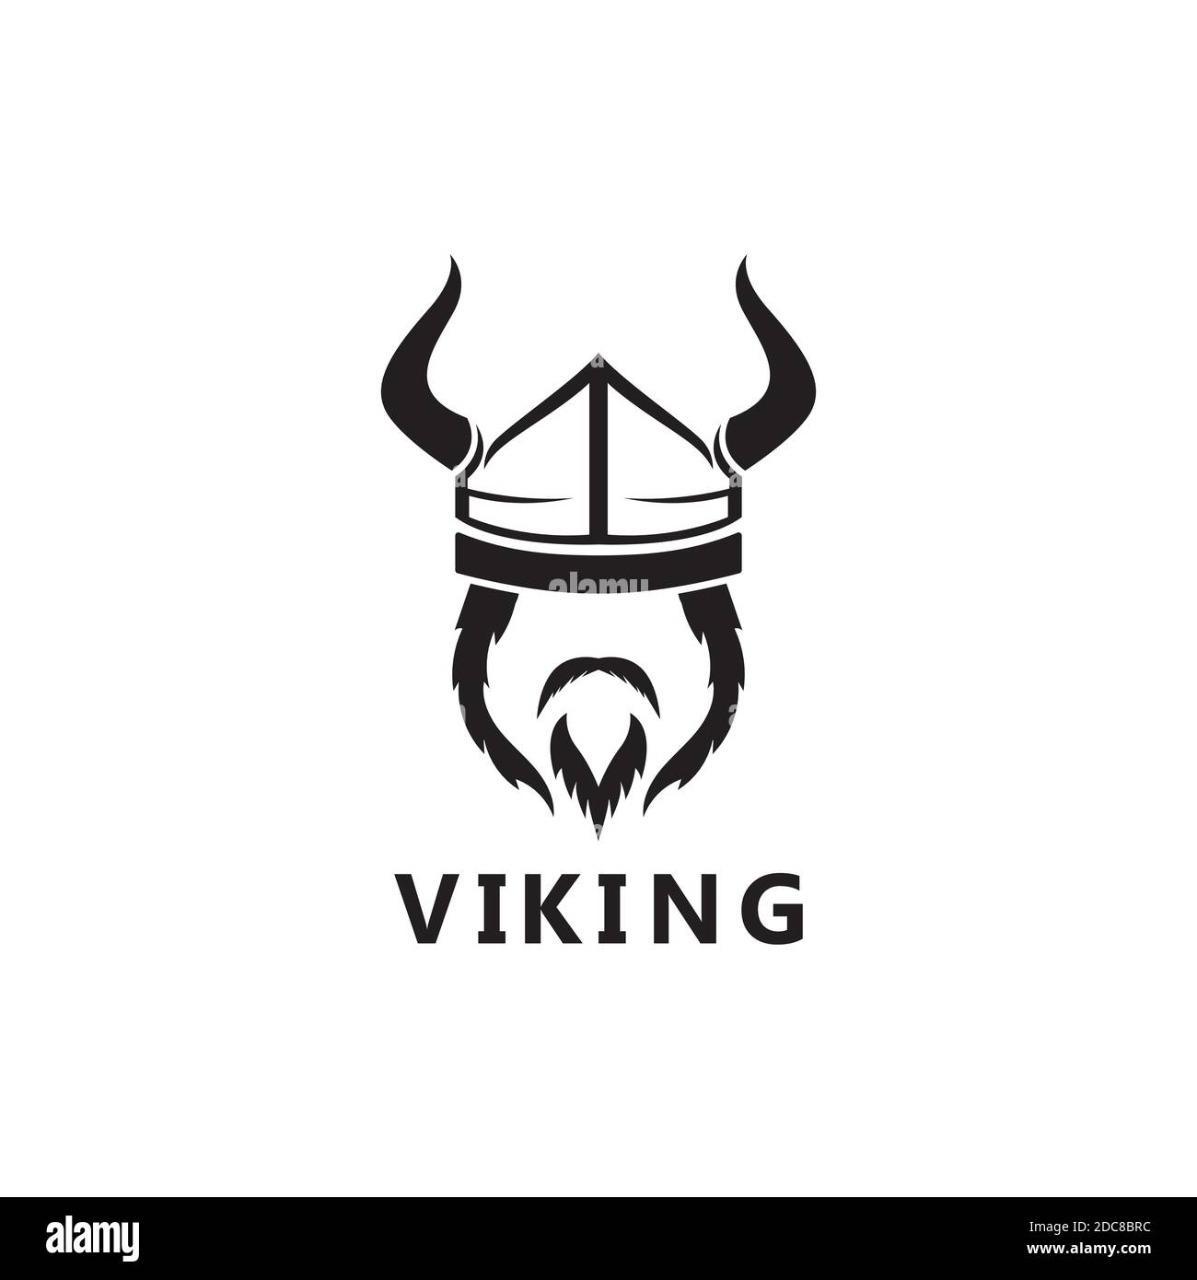 Vikingo95?s=dn8uo1eroulolzbs8zxa8nzpnjck9rhlrkm1bxnpxj8=